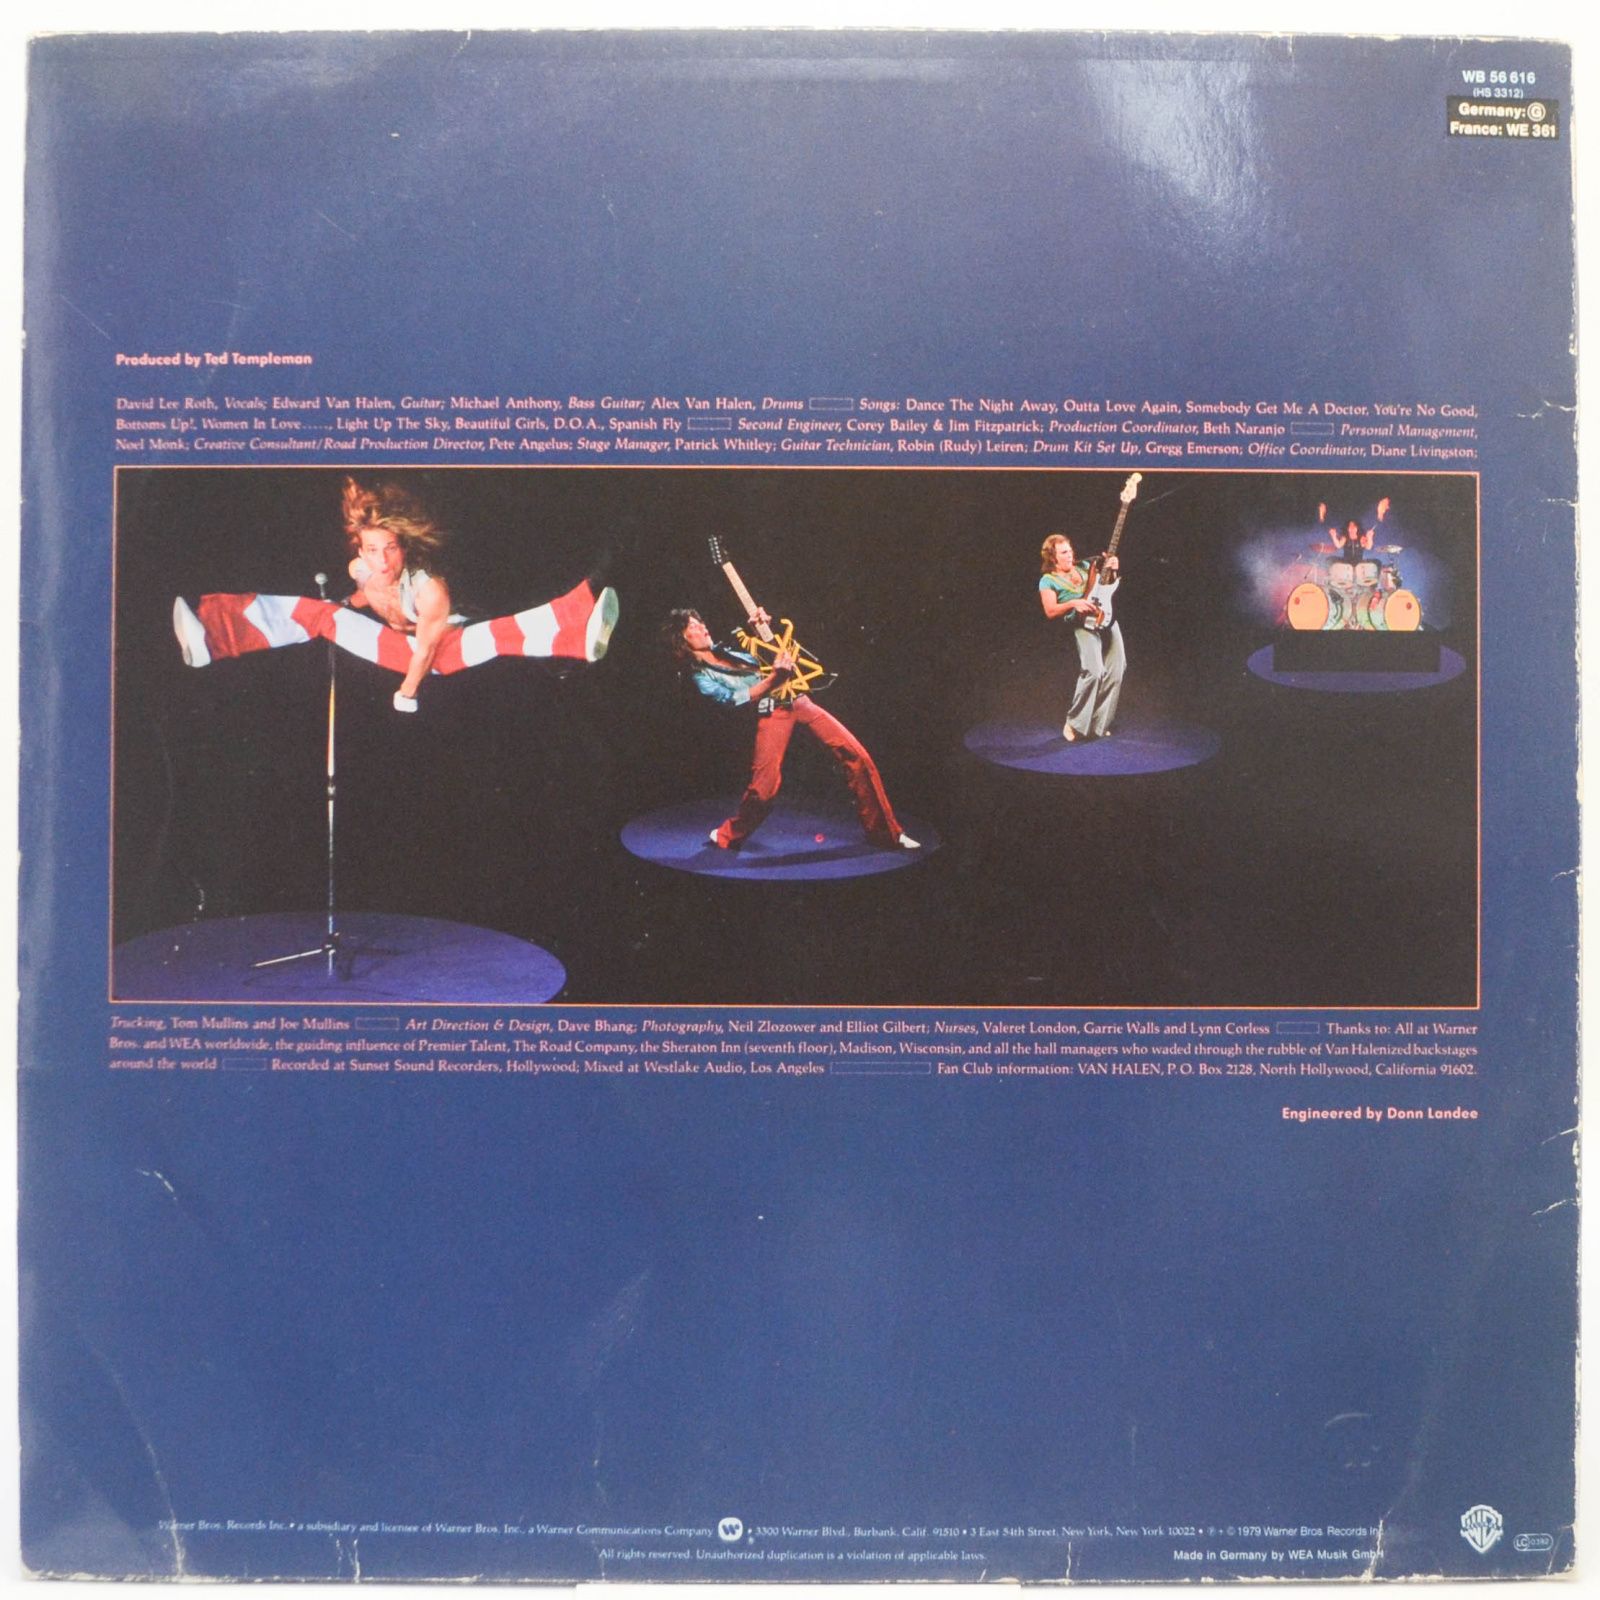 Van Halen — Van Halen II, 1986